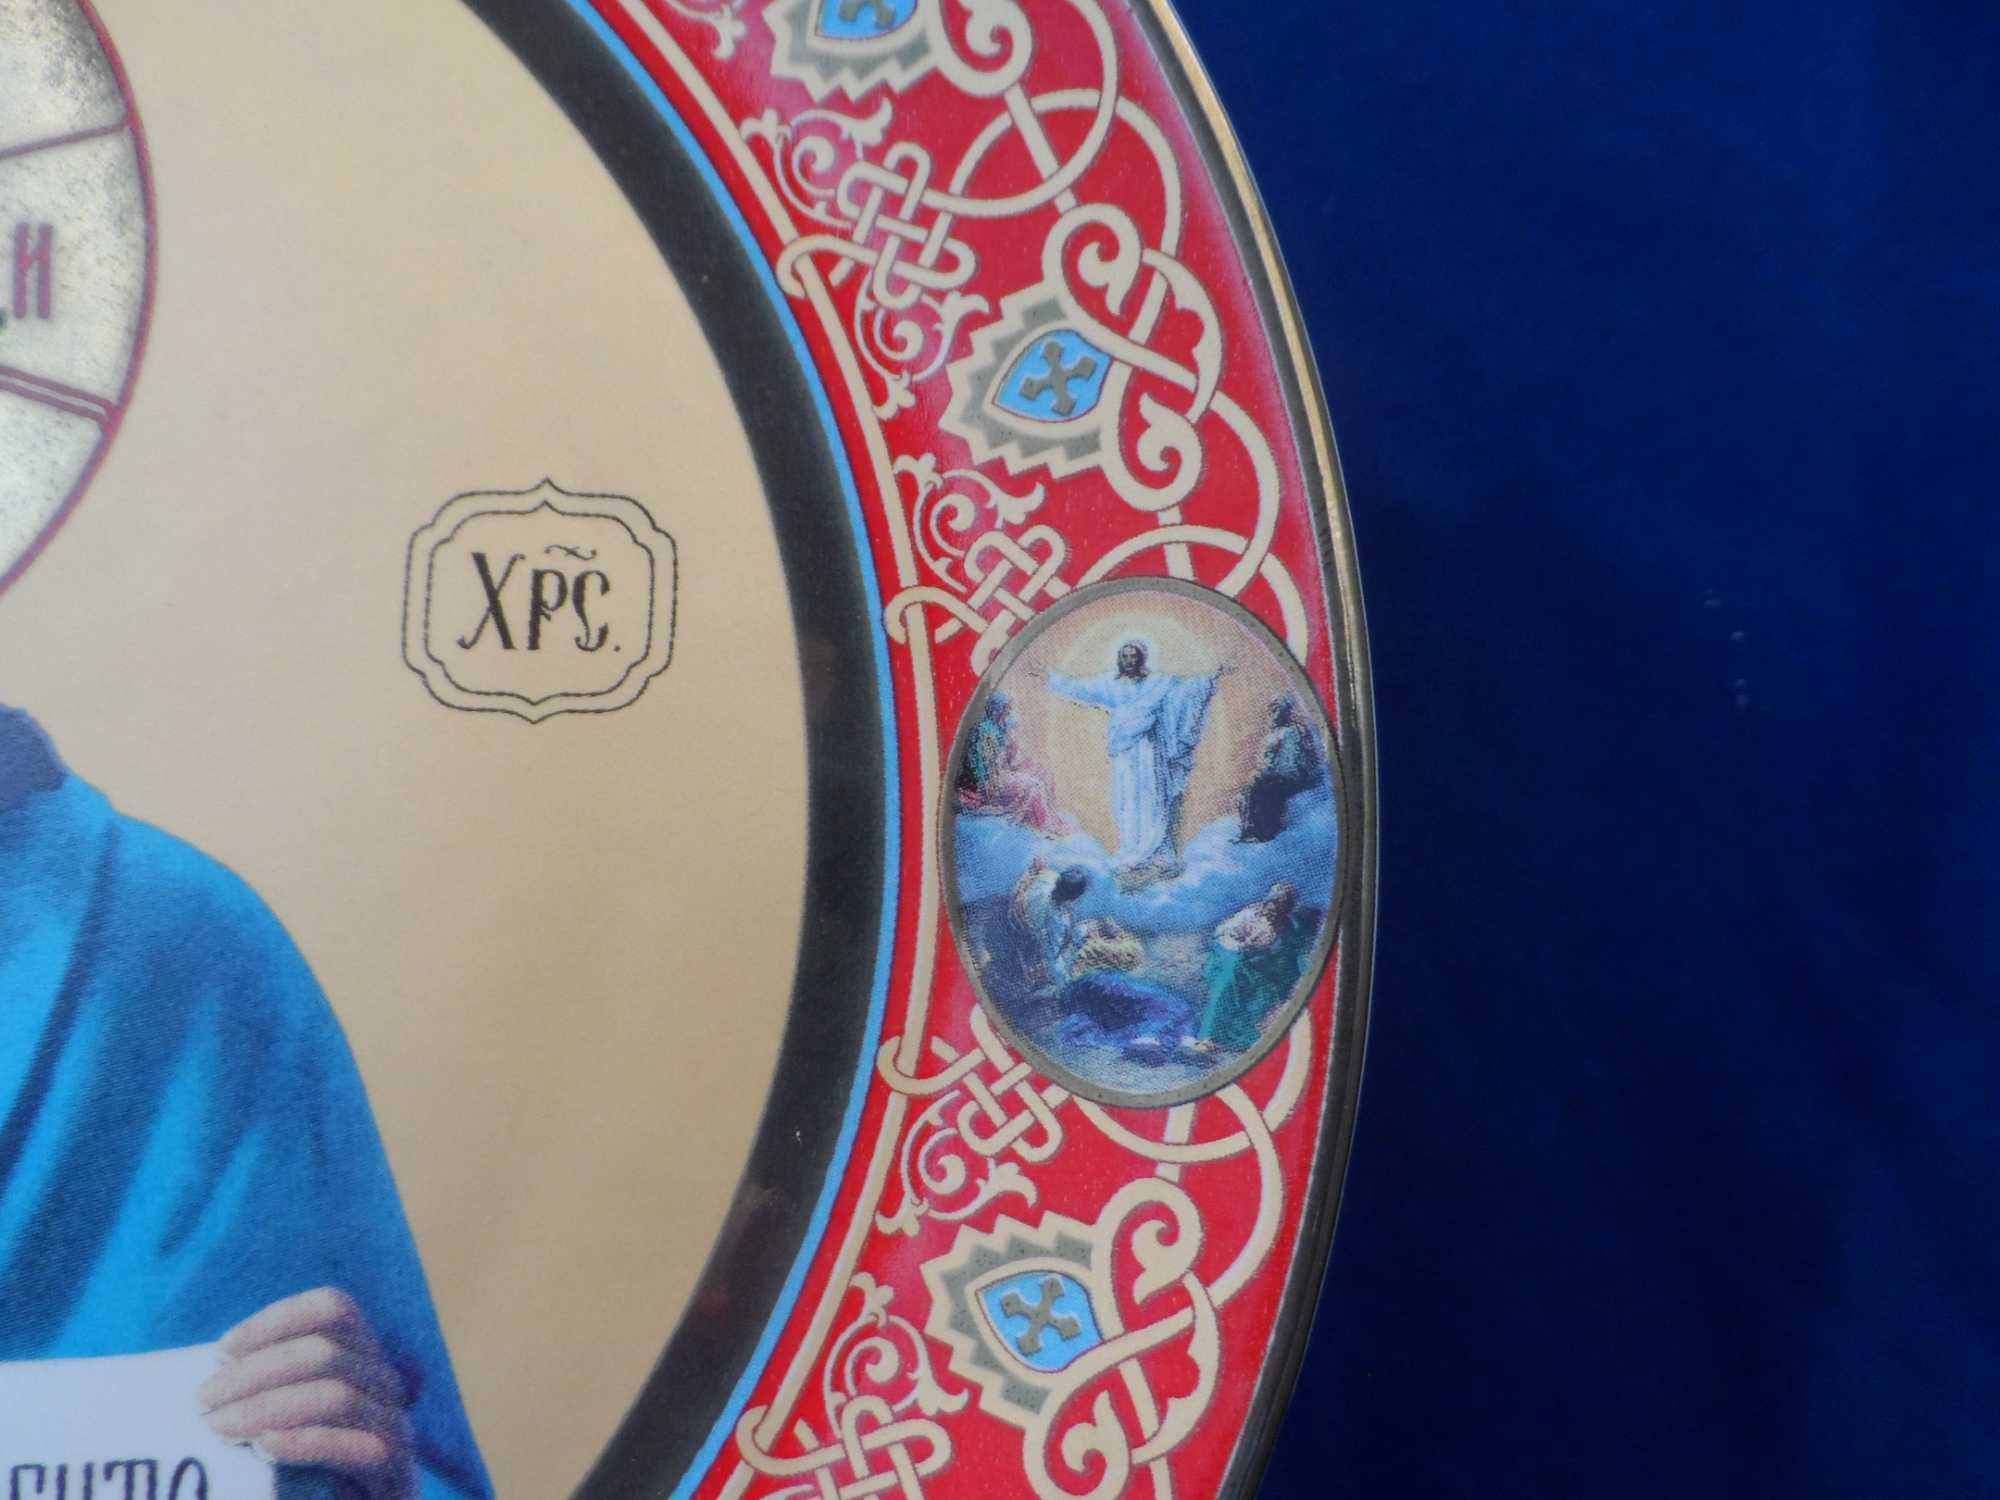 Настенная тарелка в виде иконы Иисус Христос фарфор Коростень